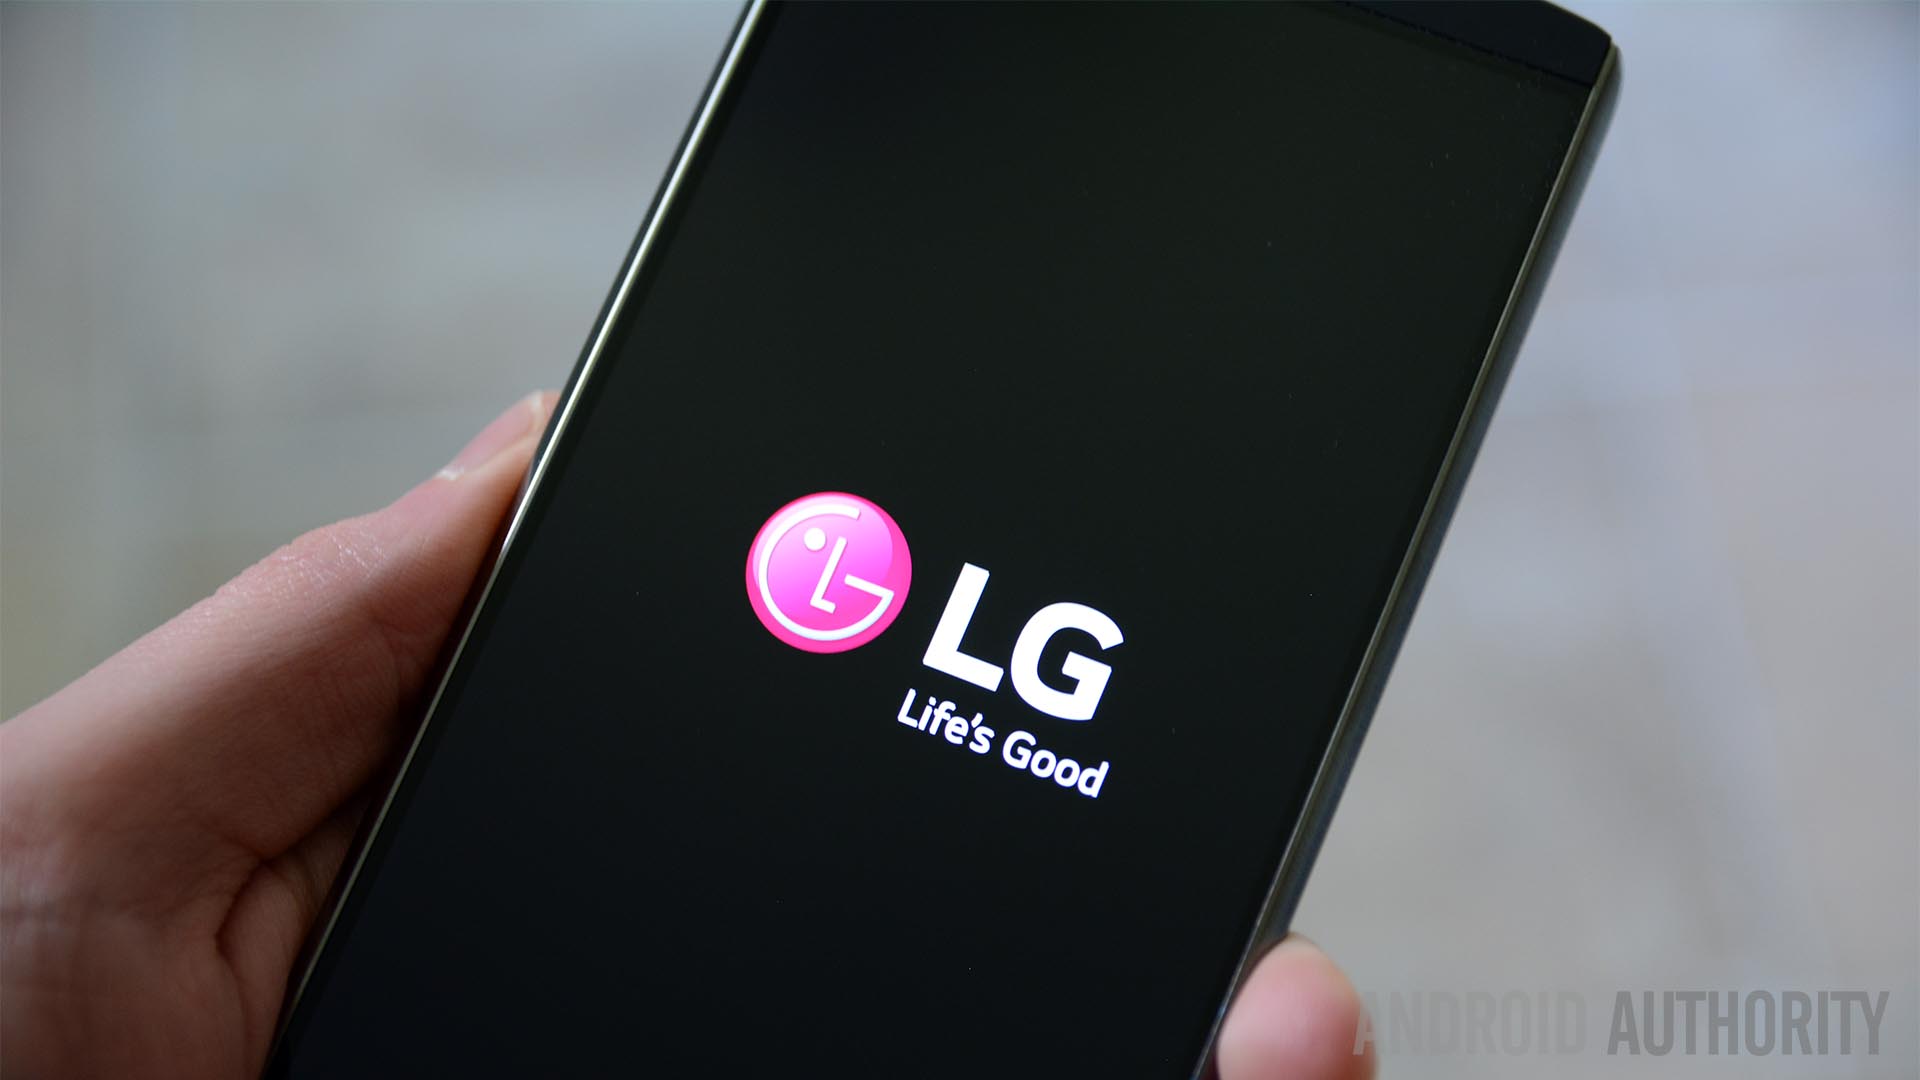 LG V10 LG logo boot